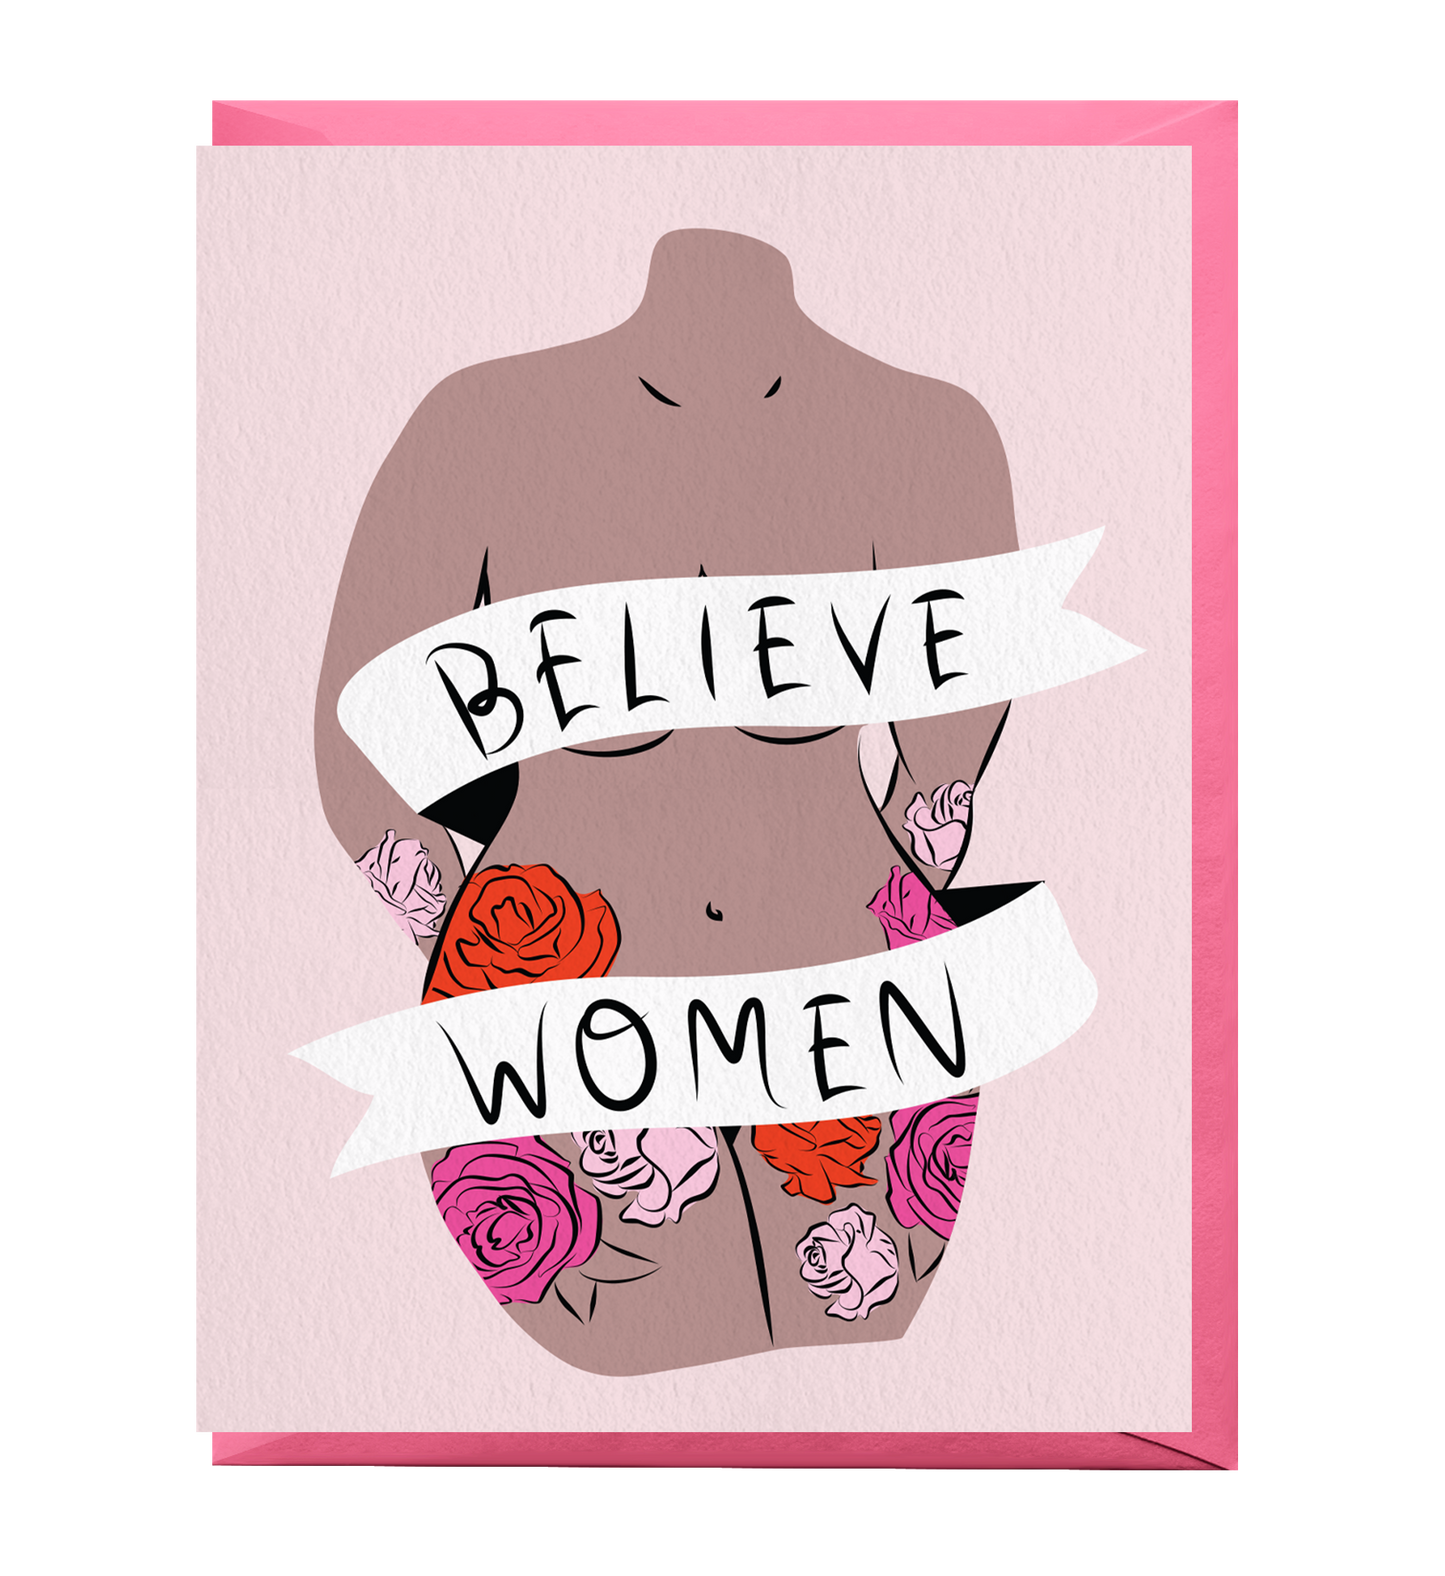 Believe Women